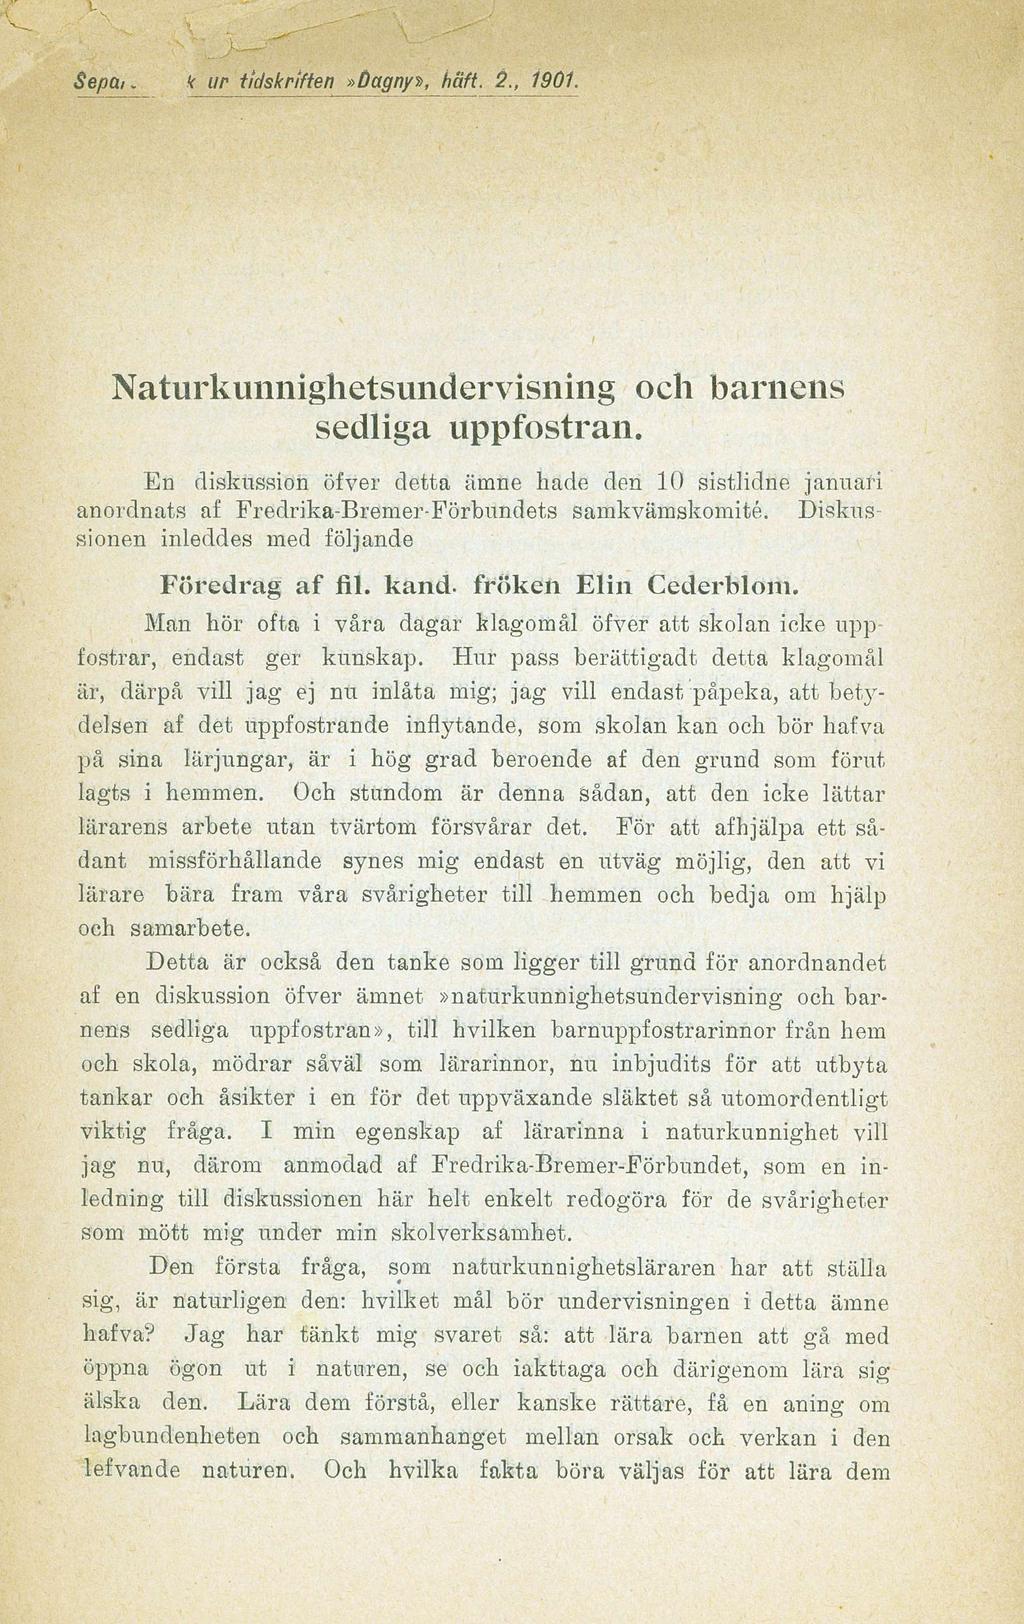 k un tidskriften»dagny», haft. 2., 1901. Naturkunnighetsundervisning och barnens sedliga uppfostran.